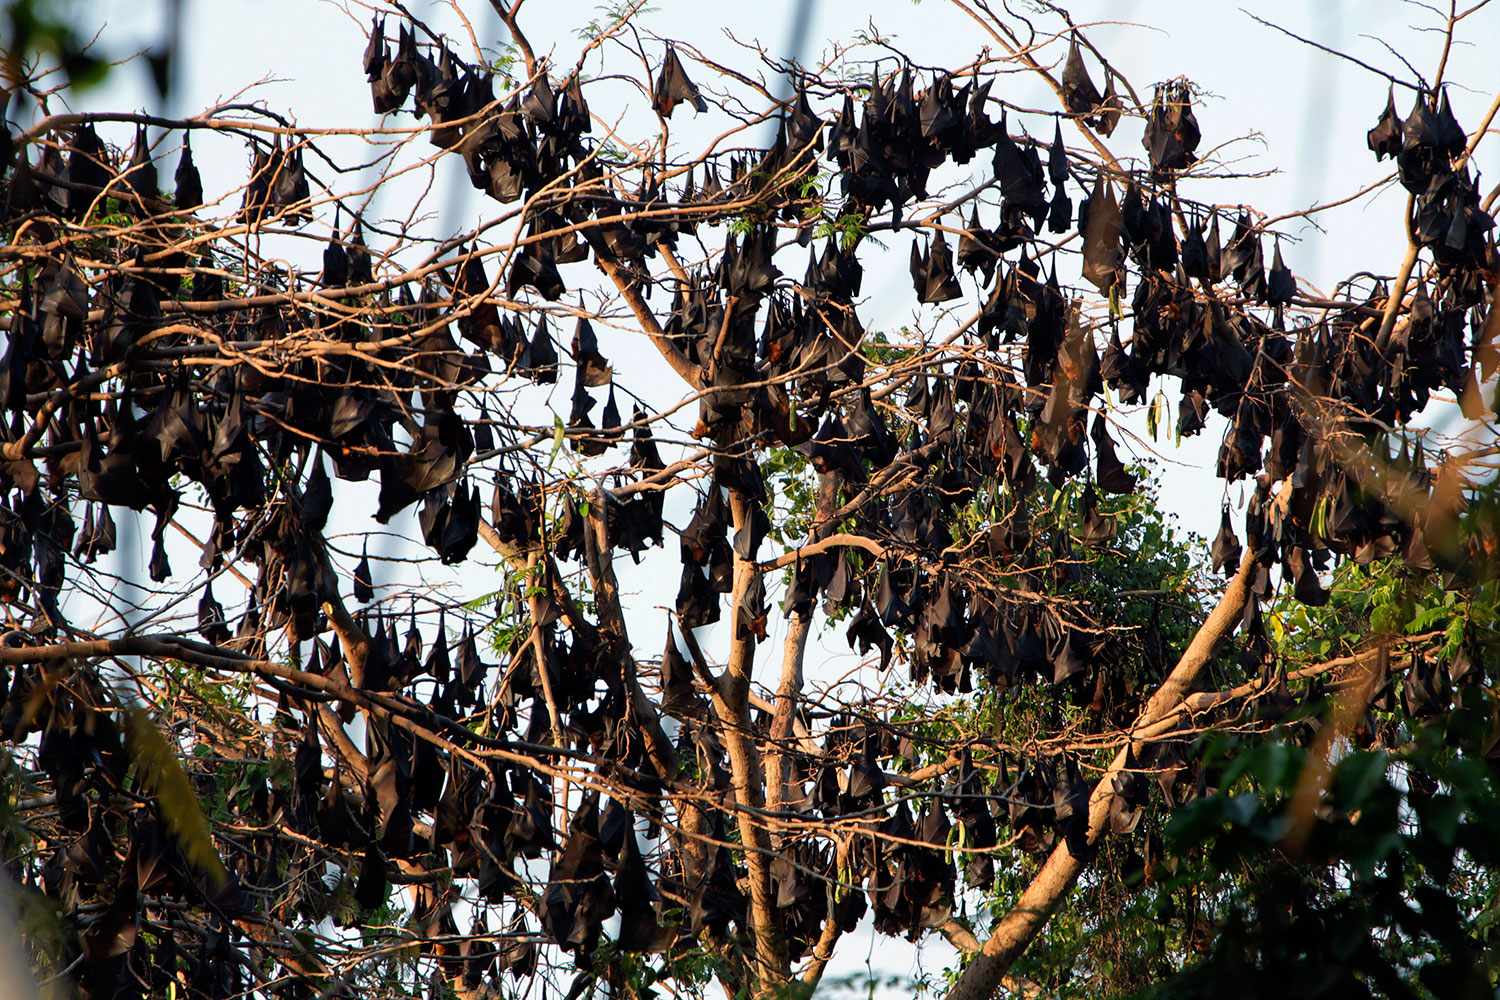 Declarado el estado de emergencia en un pueblo australiano invadido por miles de murciélagos